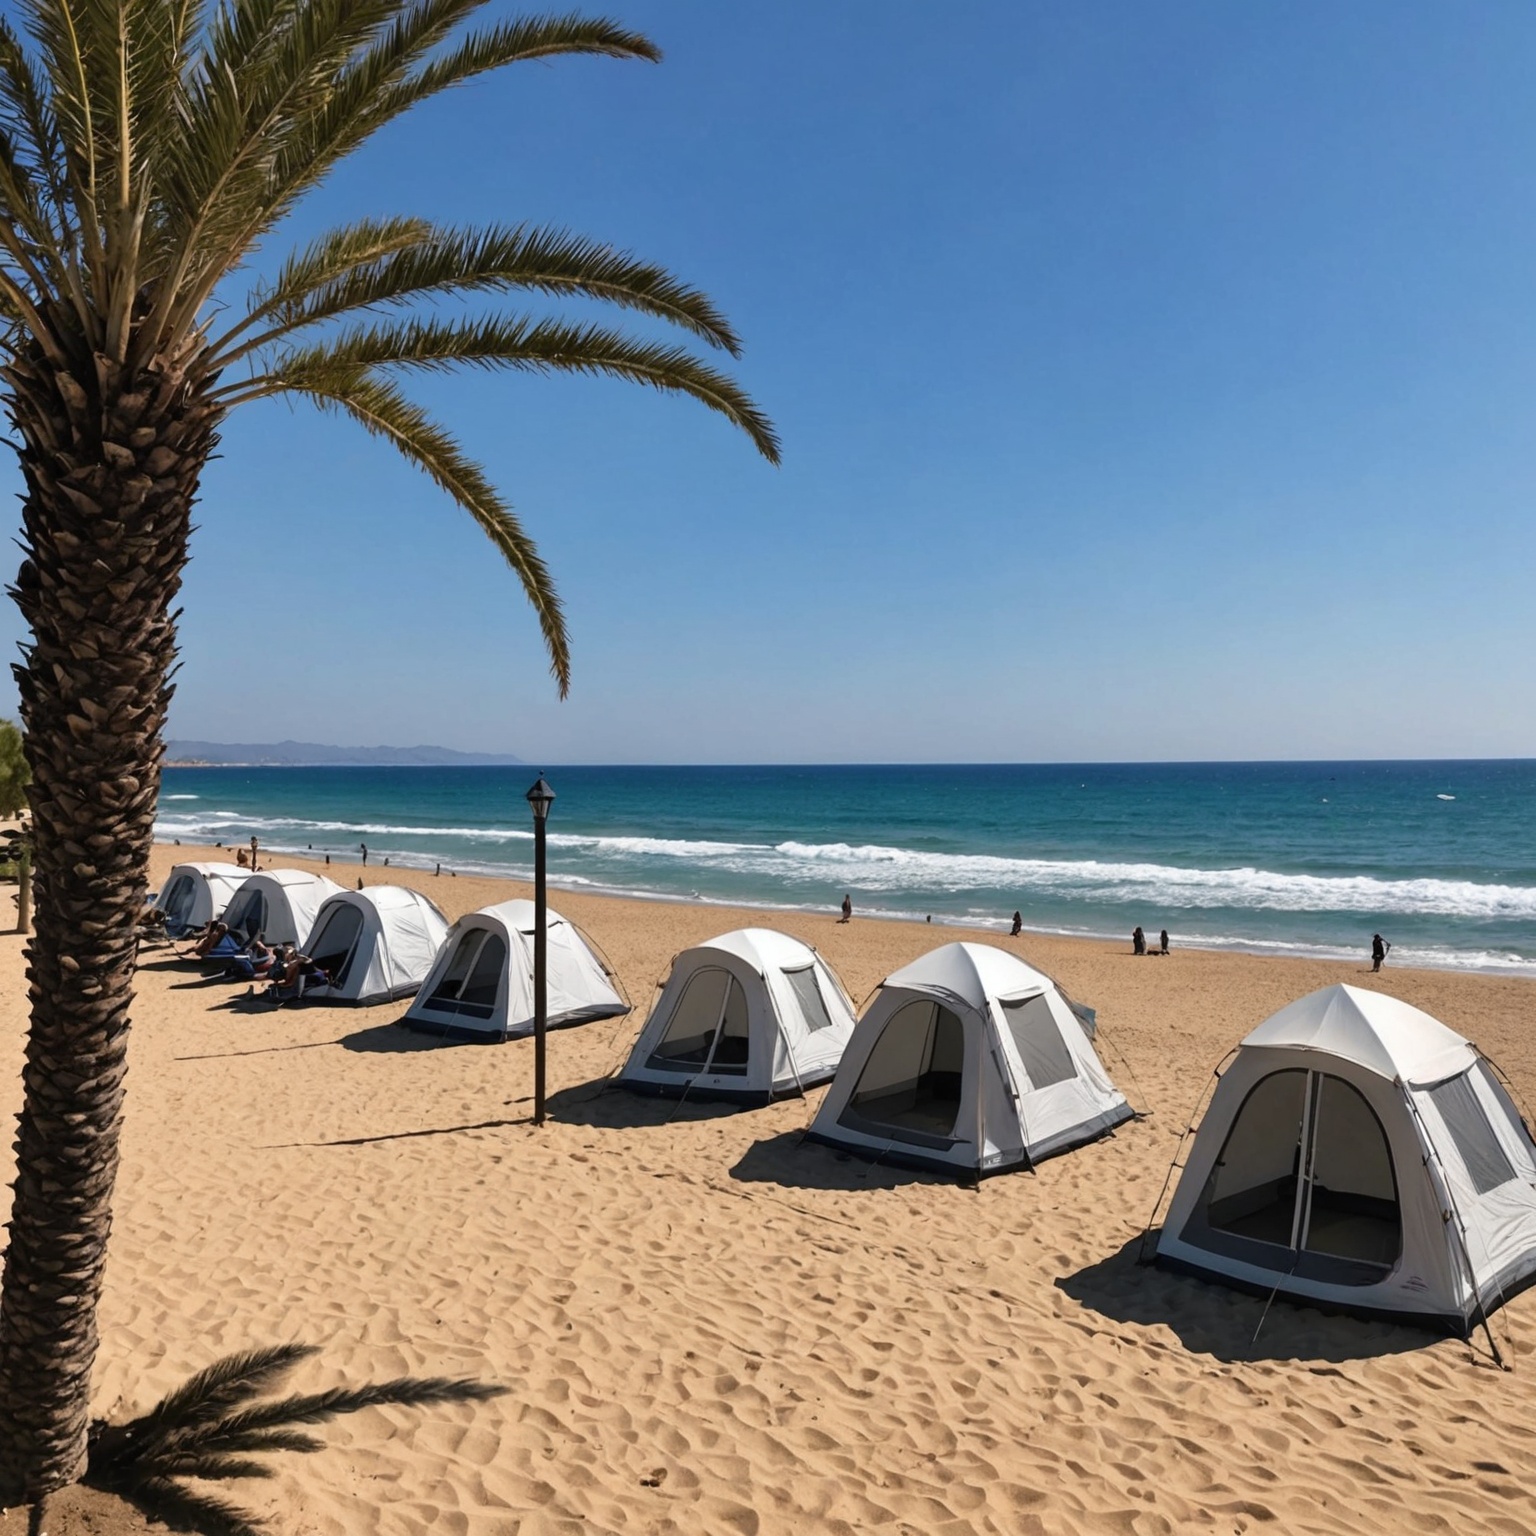 Découvrez le Top des Locations de Vacances à Saint-Cyprien pour un Séjour Camping Inoubliable sur la Côte Méditerranéenne !